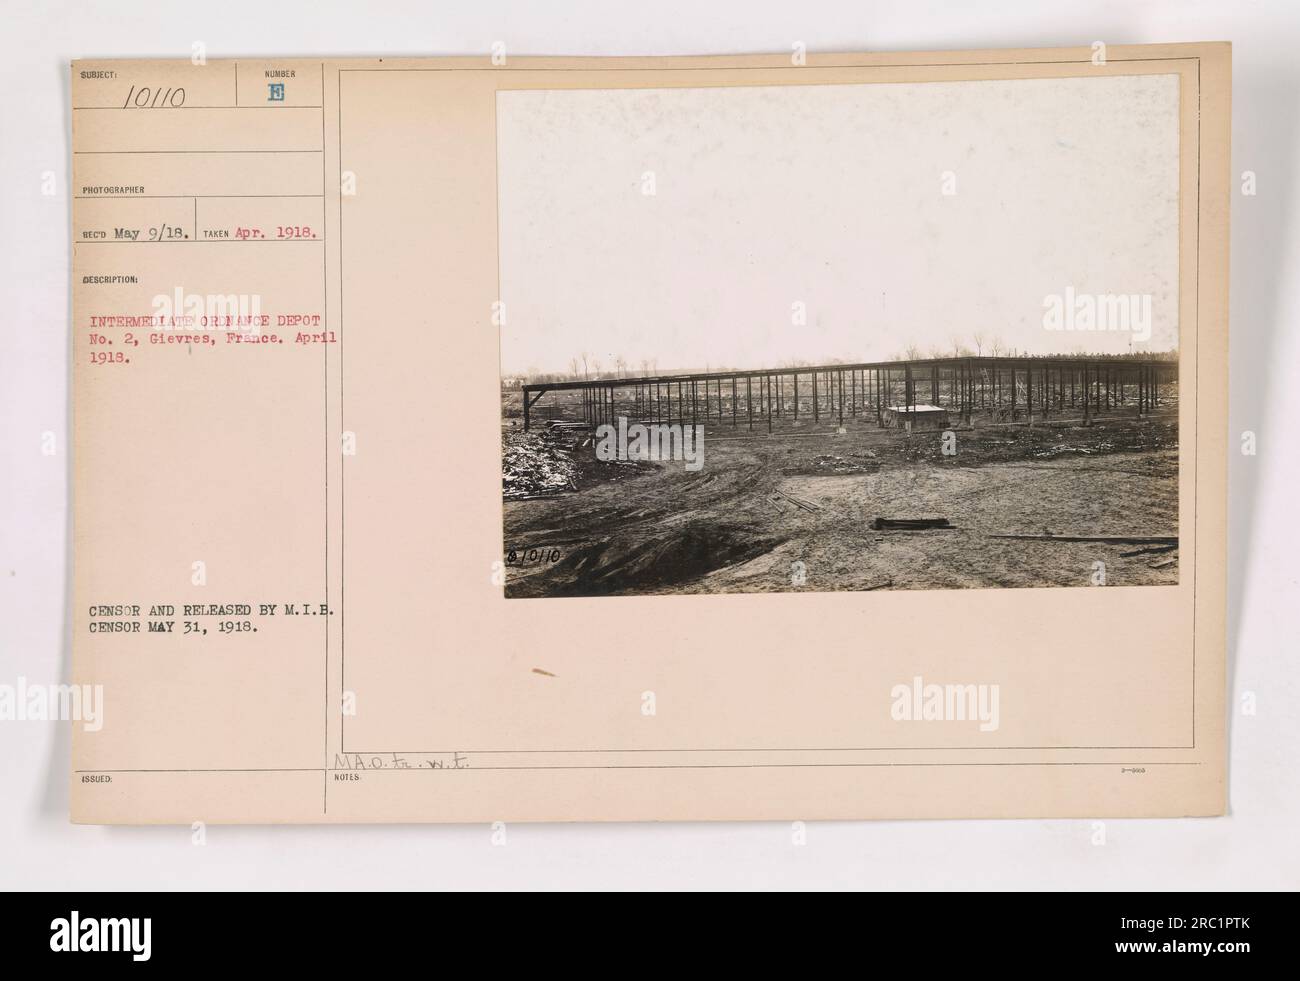 "Questa fotografia raffigura l'Intermediate Ordnance Depot #2 a Gievres, Francia, nell'aprile 1918. È stato scattato da un fotografo di nome RECO il 1918 aprile. All'immagine è stata rilasciata una descrizione numero 10110. La fotografia è stata censurata e pubblicata da M.I.B. censor il 31 maggio 1918. Porta il timbro di M.A.O. to.w.t. e ha la notazione MOHO --xx.' Foto Stock